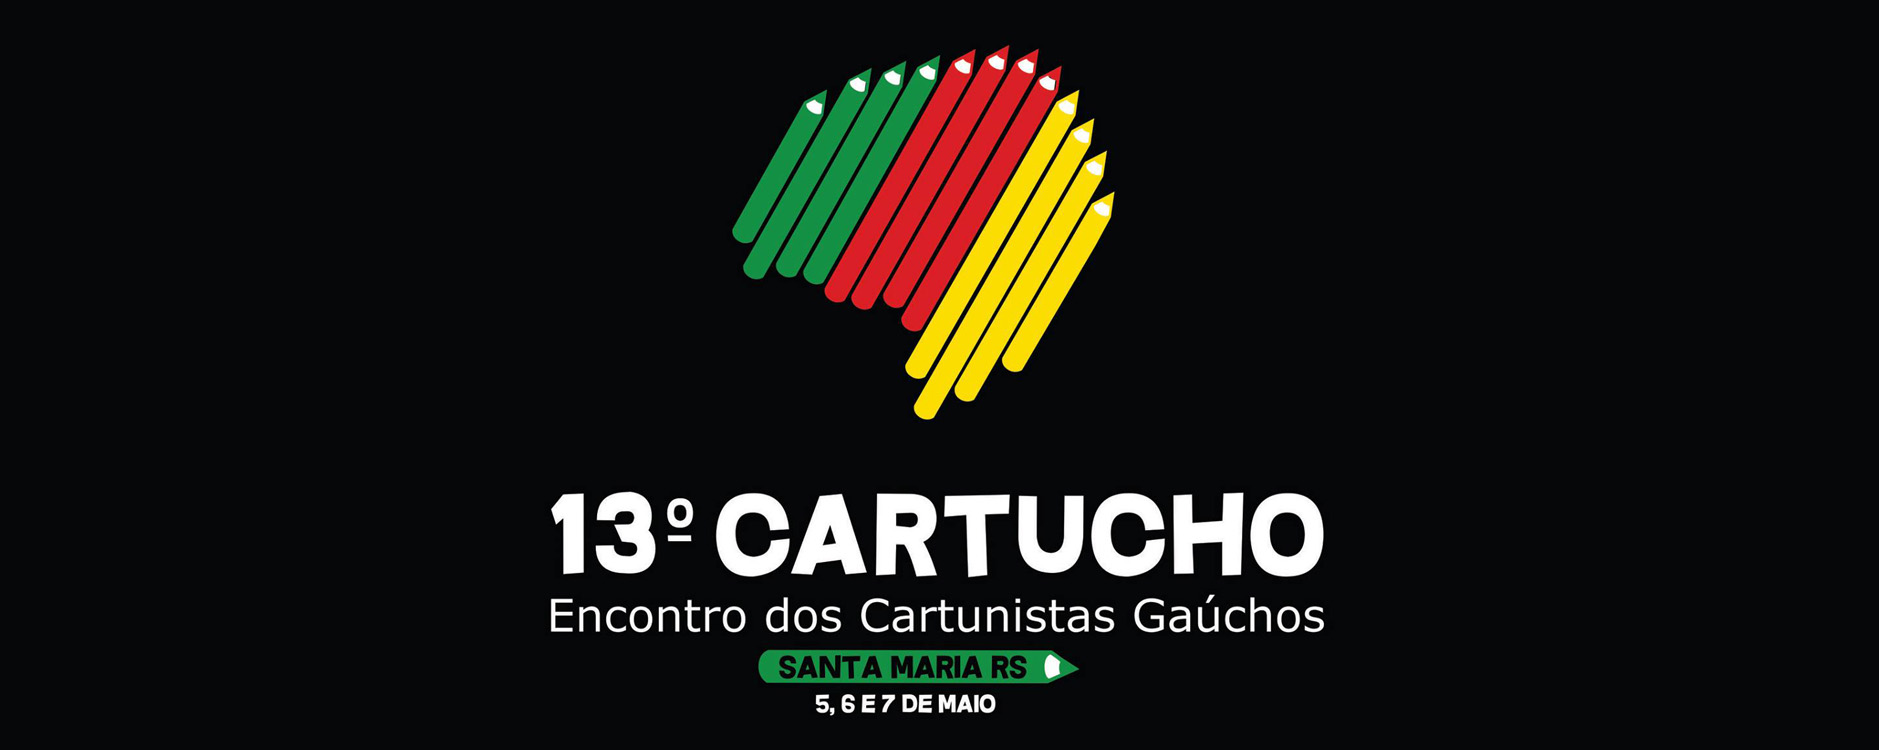 Cartuchoo001